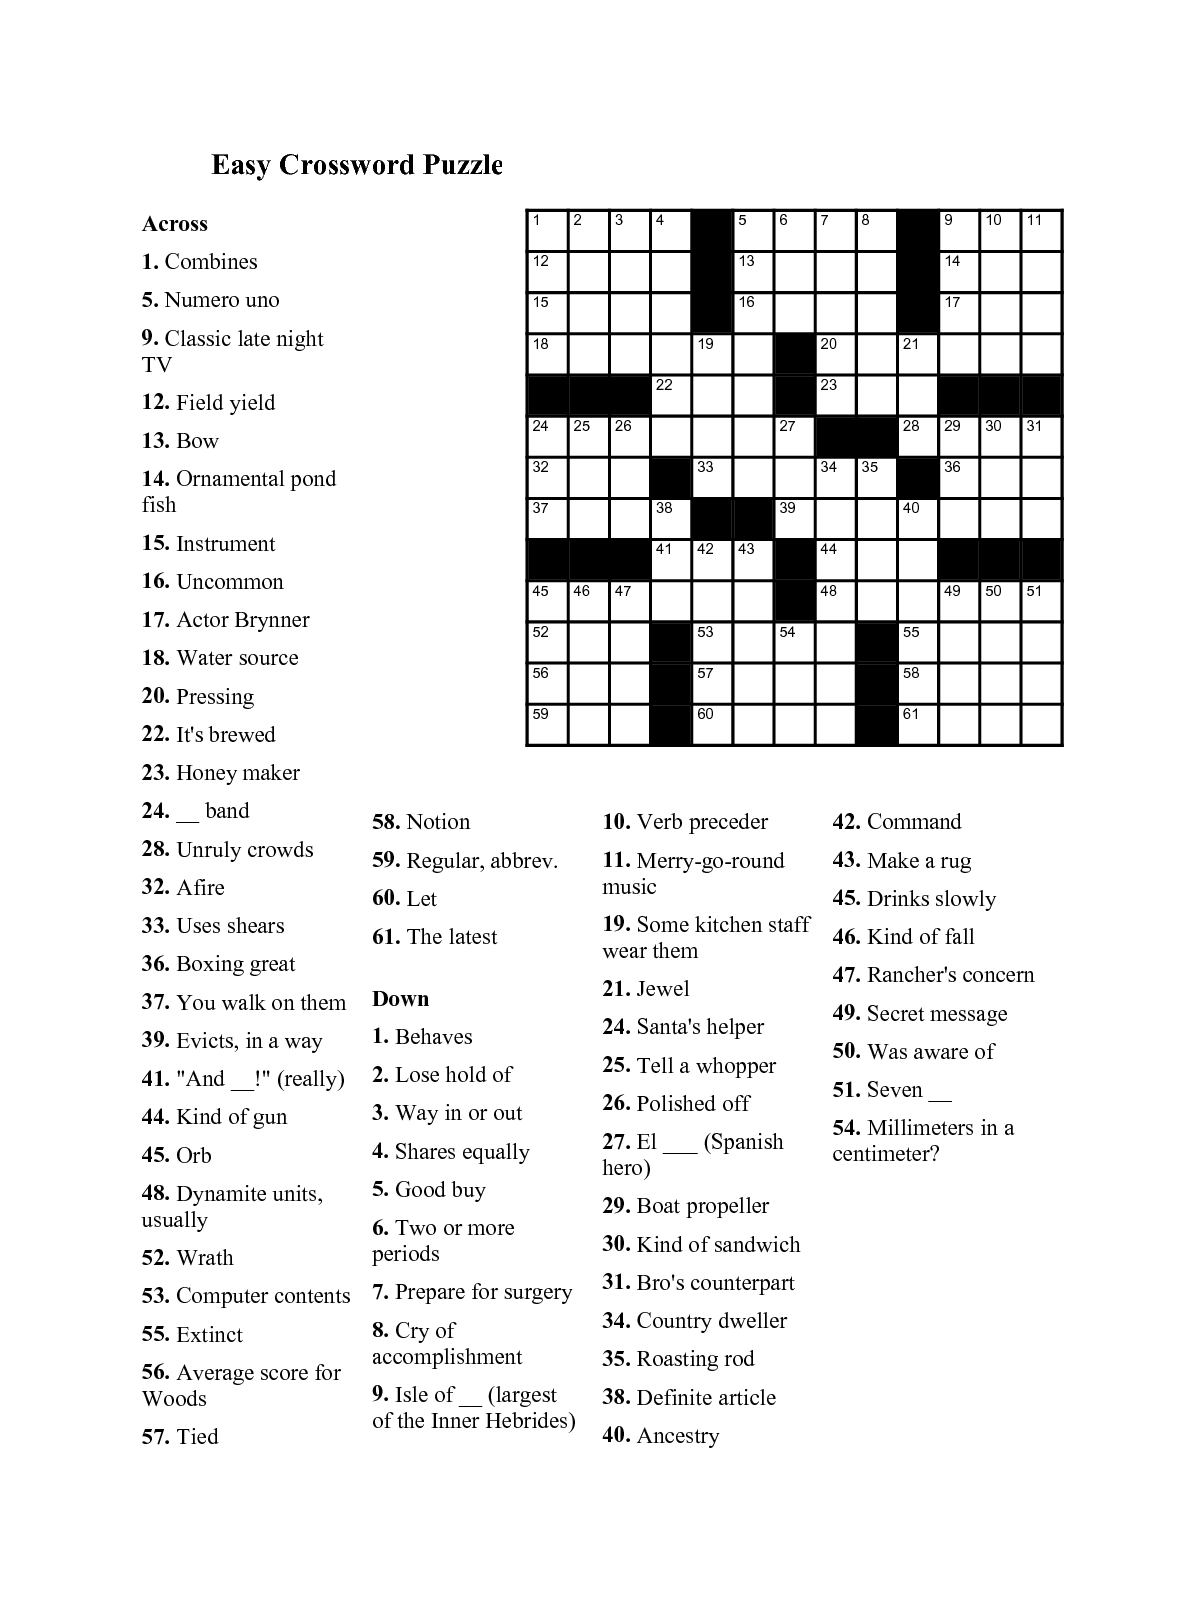 Easy Crossword Puzzles For Seniors Usatodaycrosswordpuzzle co - Easy Con Victims Crossword